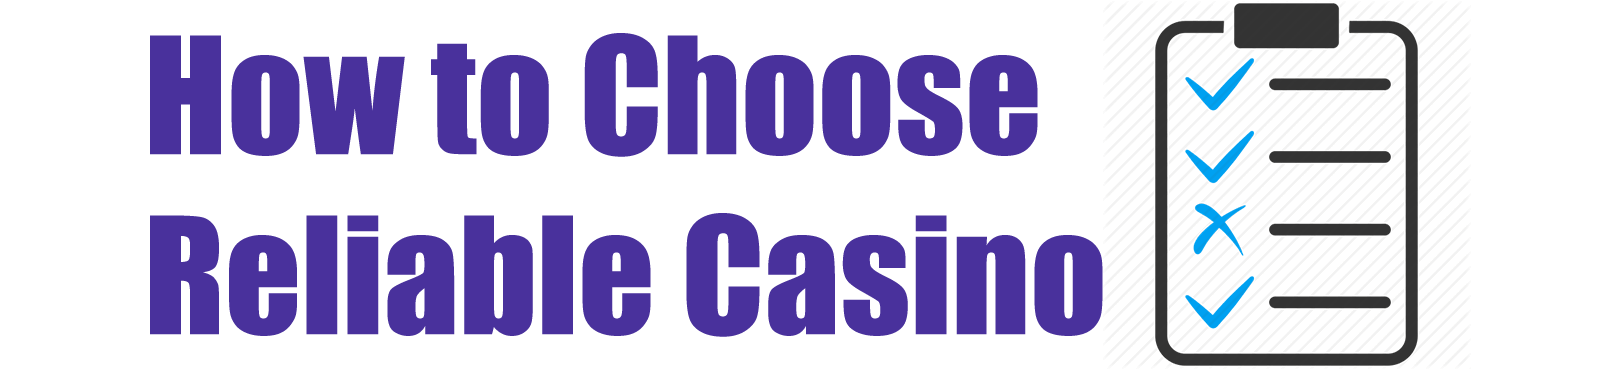 TOFCasino.com   How To Choose Reliable Casino